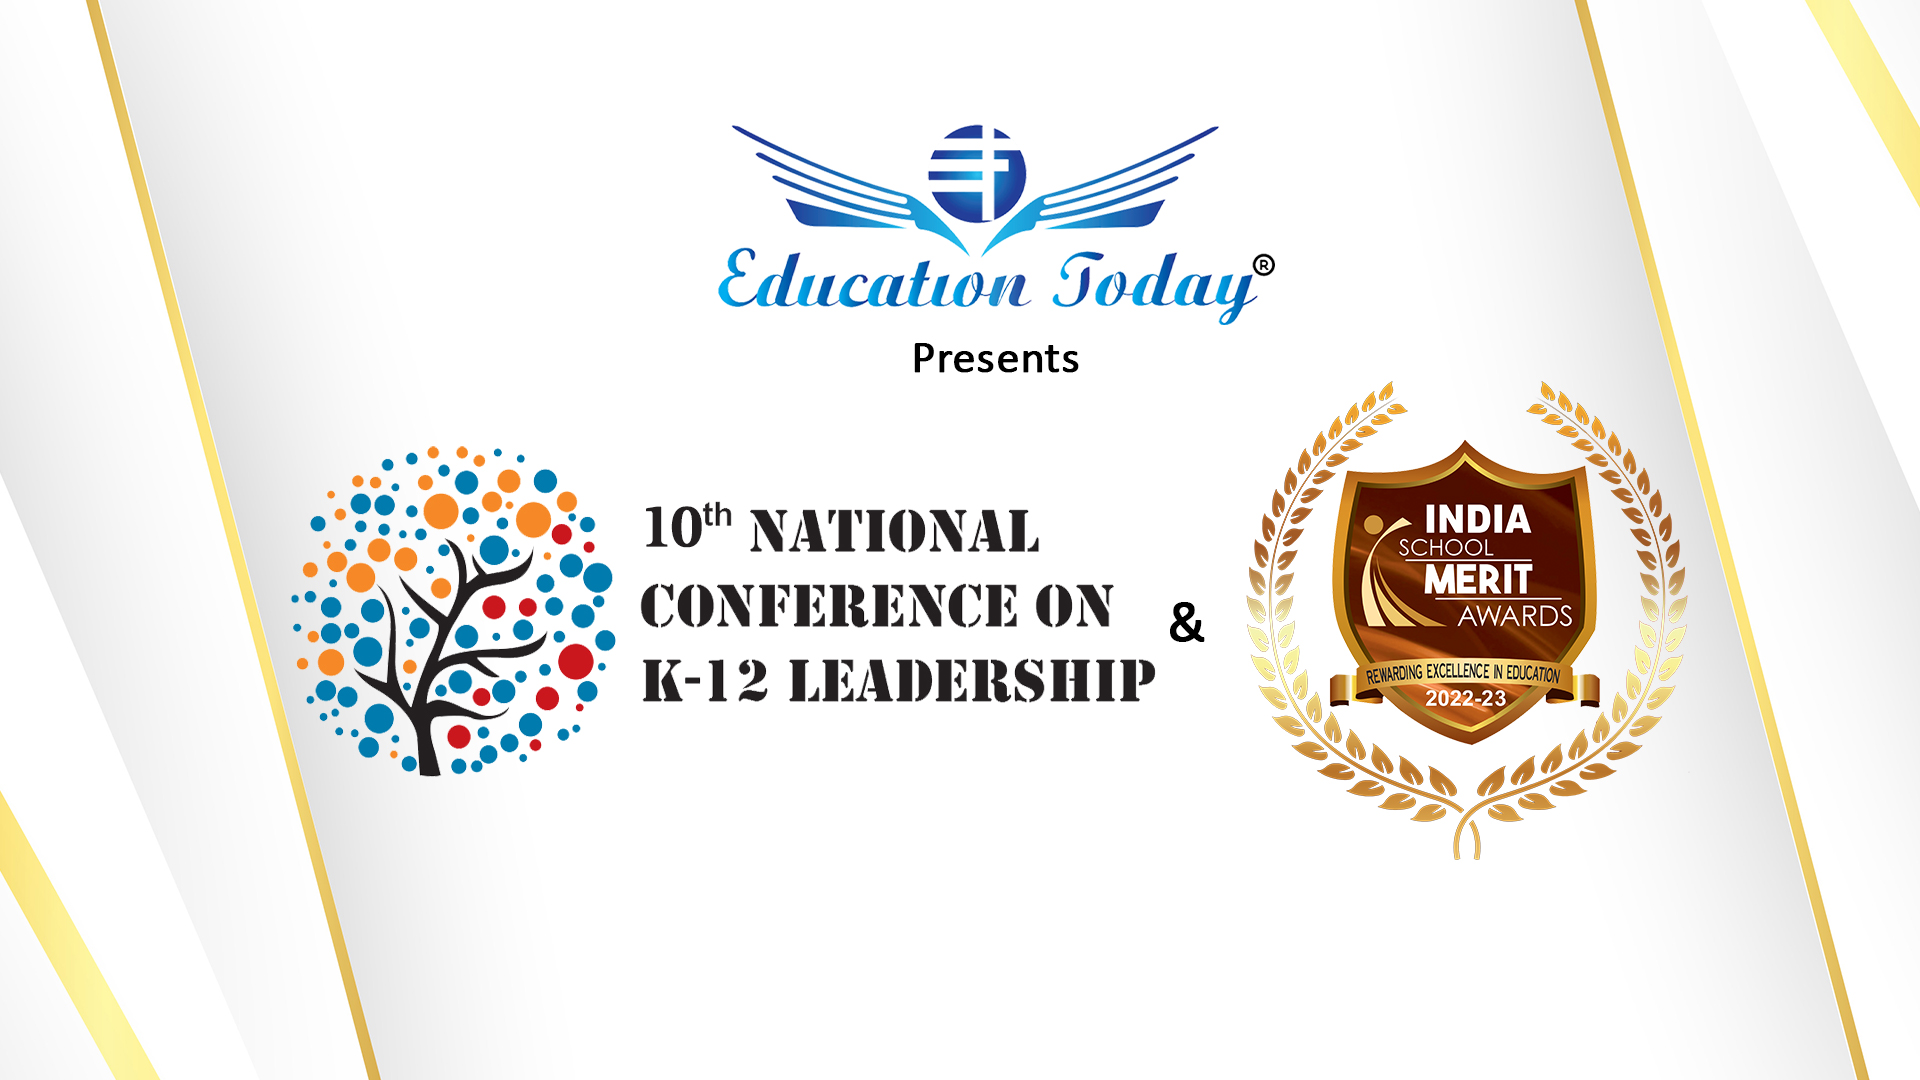 National Conference on K-12 Leadership & India School Merit Awards 2022-23, Bangalore, Karnataka, India